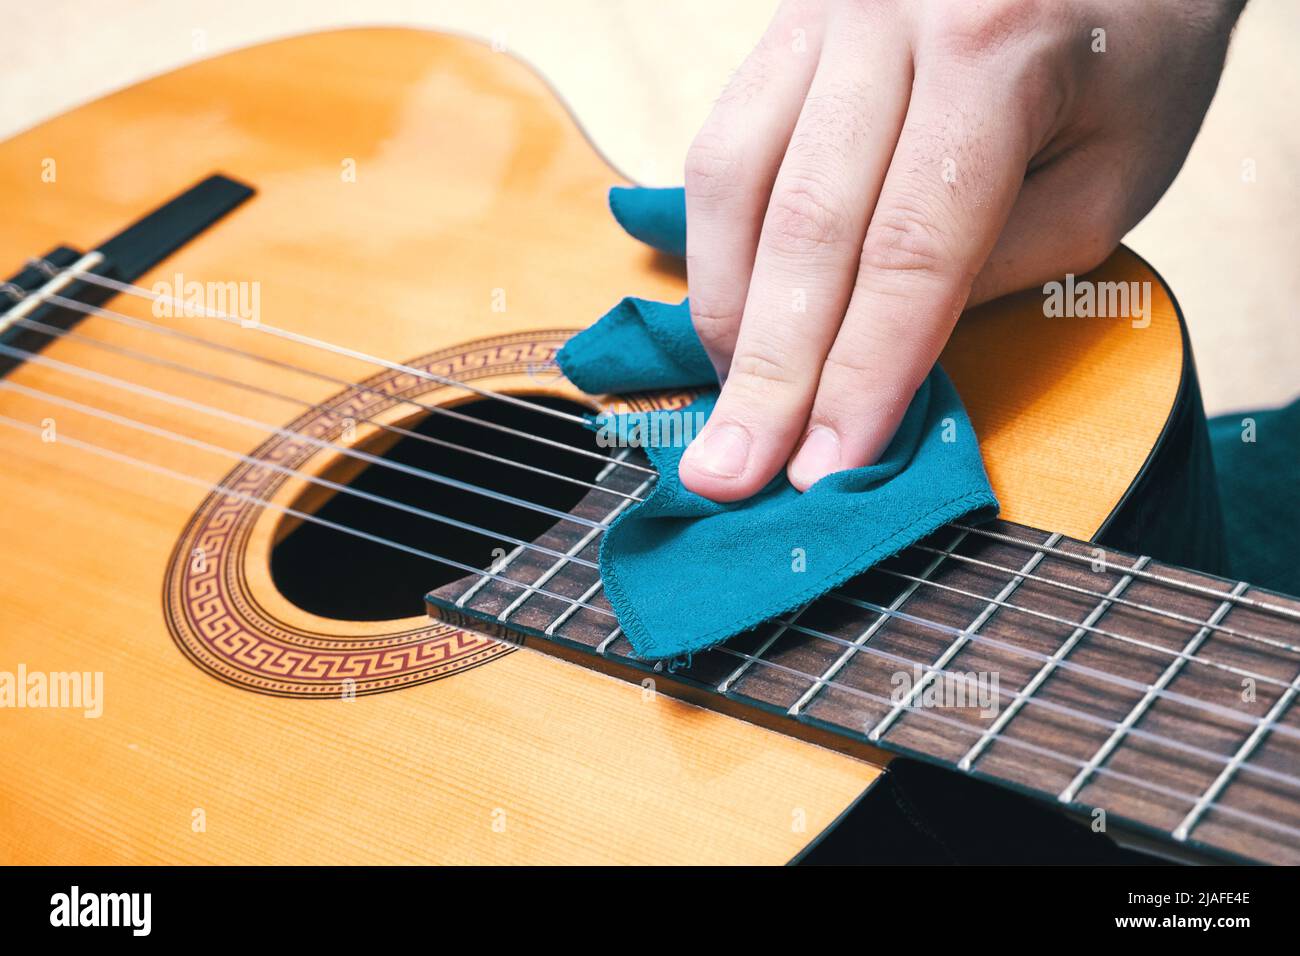 Reinigen der Gitarre. Pflege von Musikinstrumenten. Richtige Gitarrenpflege  Stockfotografie - Alamy